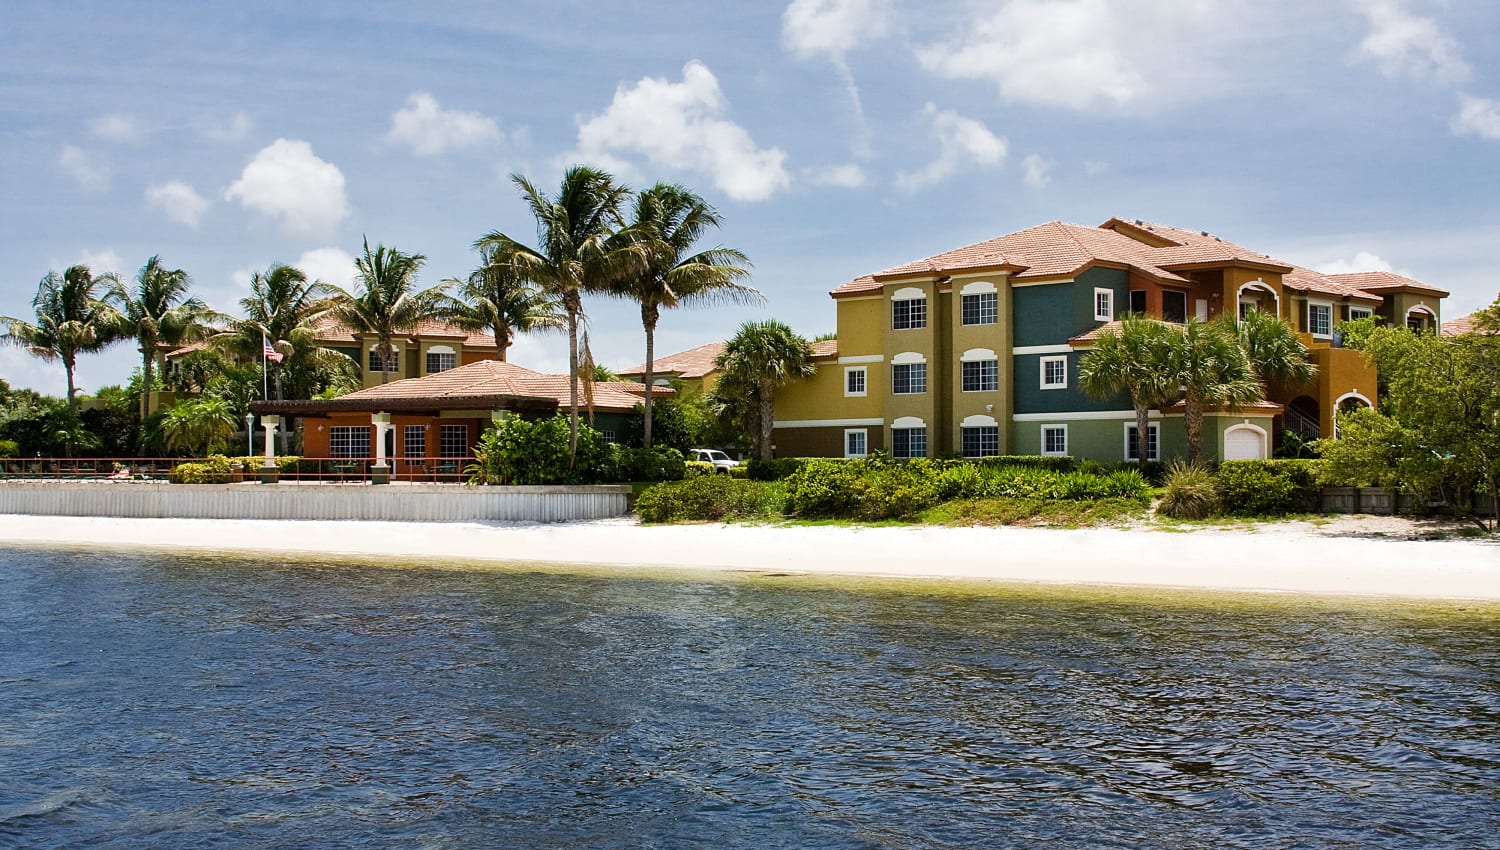 Exterior of Manatee Bay Apartments by the beach in Boynton Beach, Florida